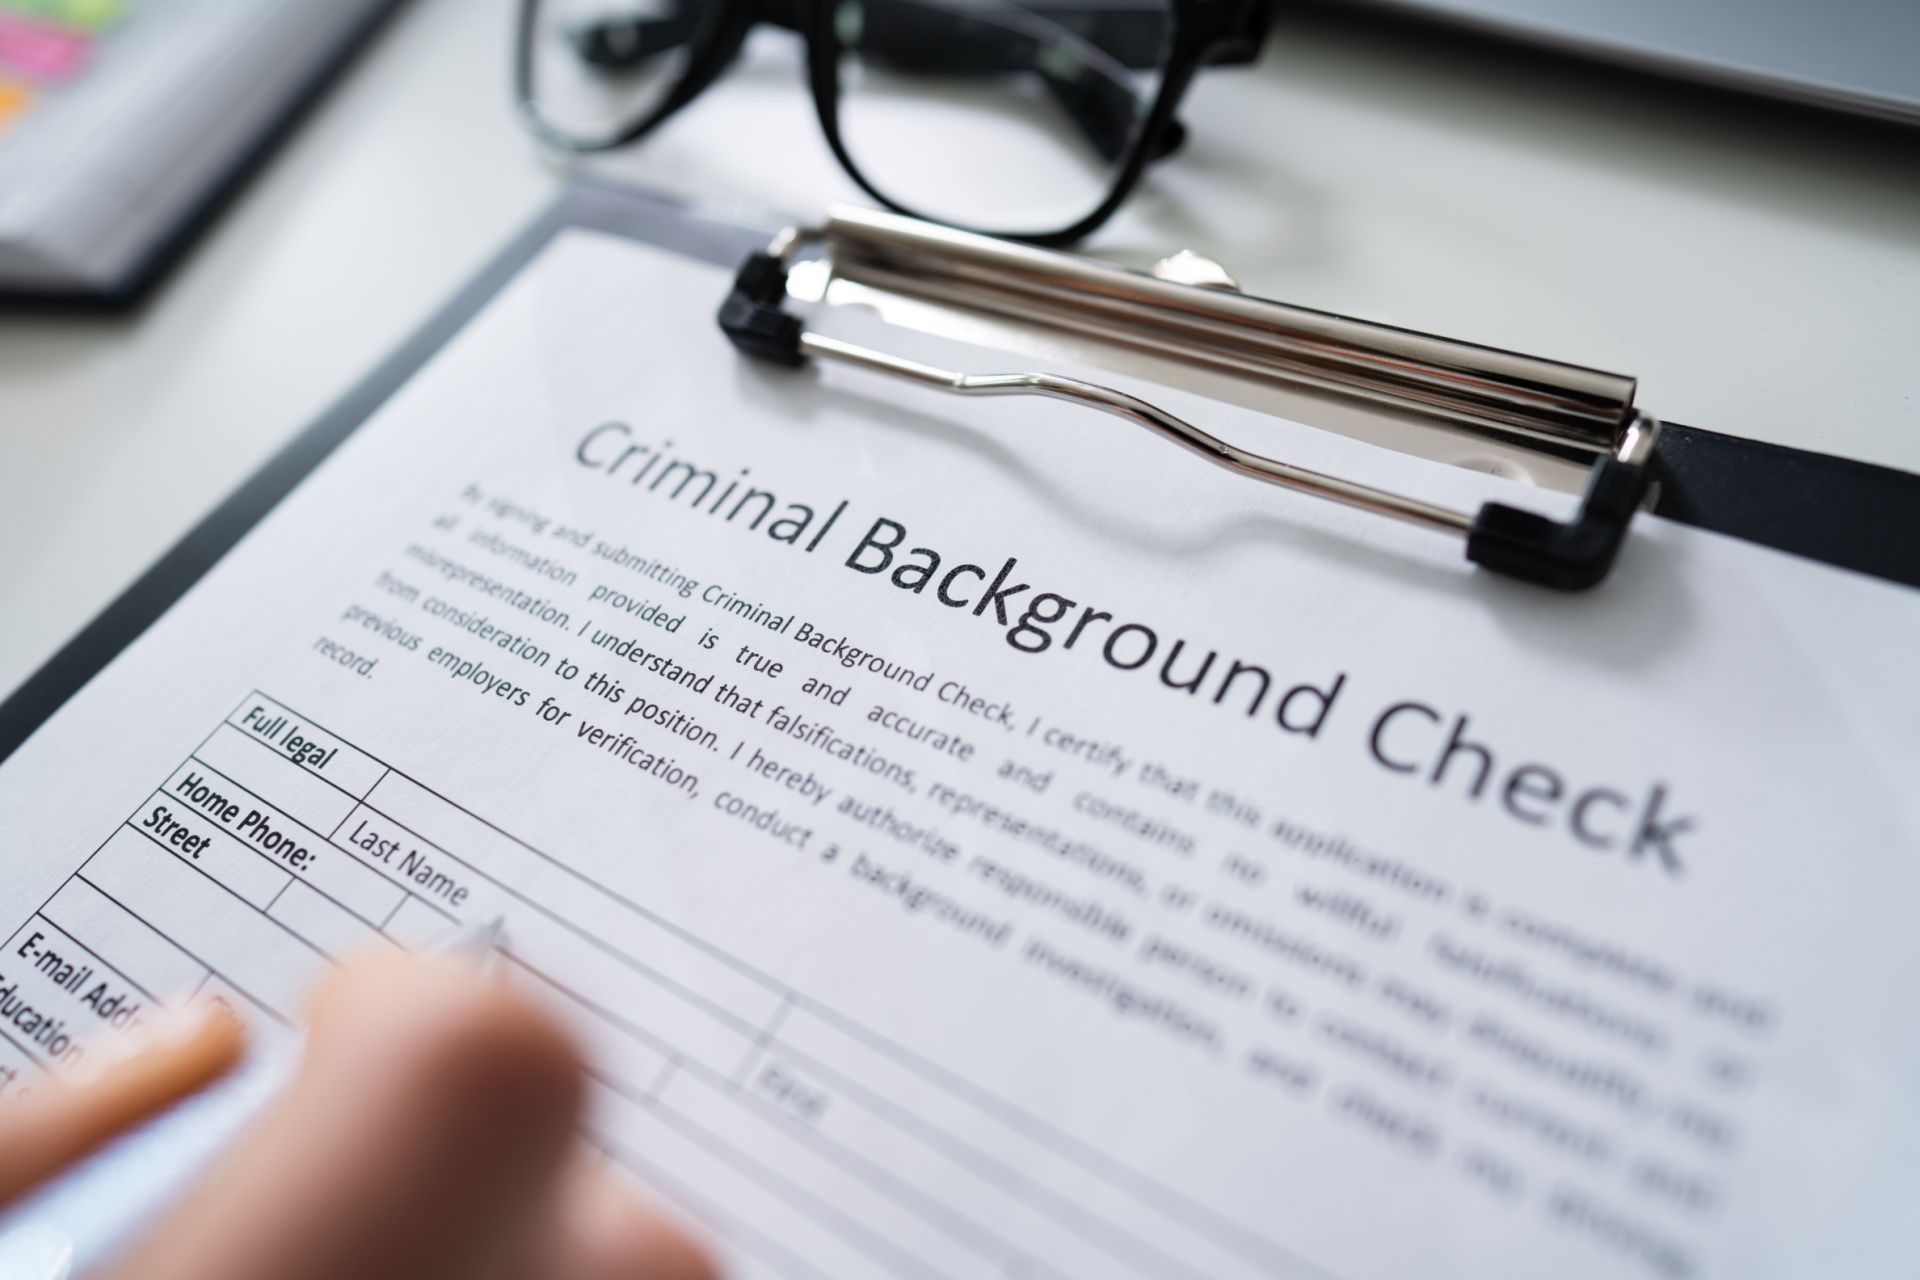 Criminal Records Check Services in Orlando, FL